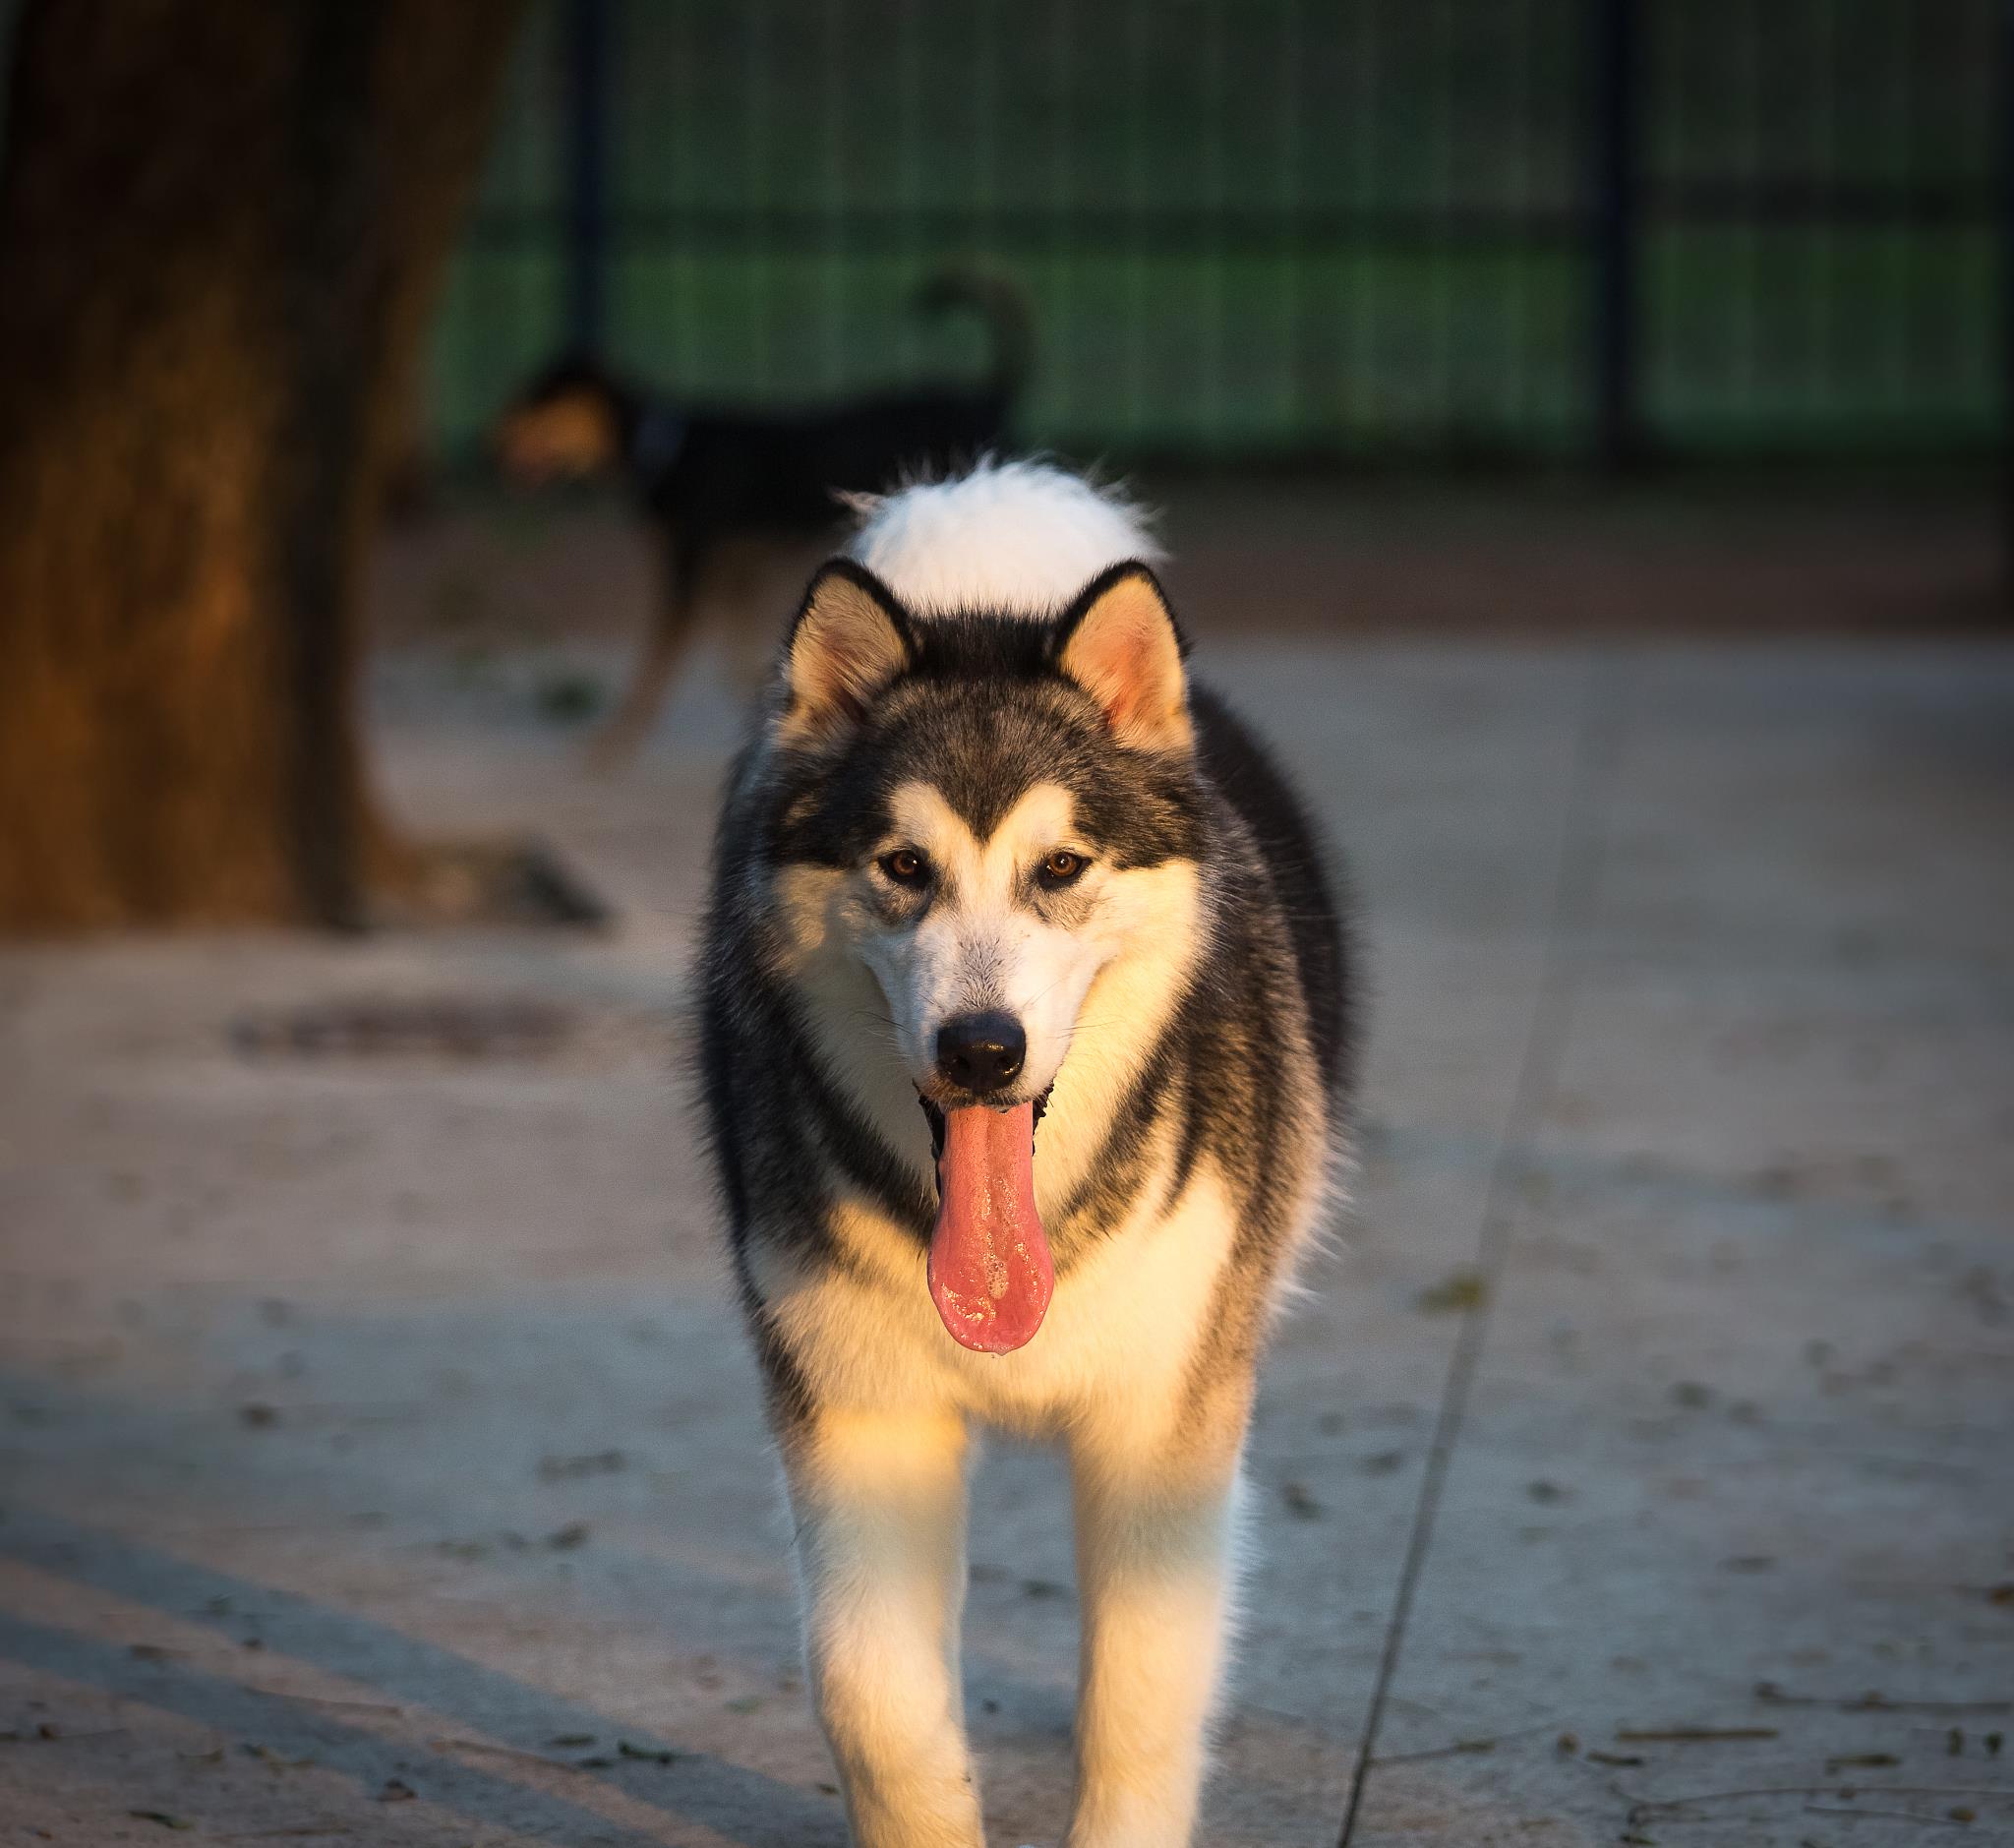 哈士奇,西伯利亚雪橇犬,简称二哈